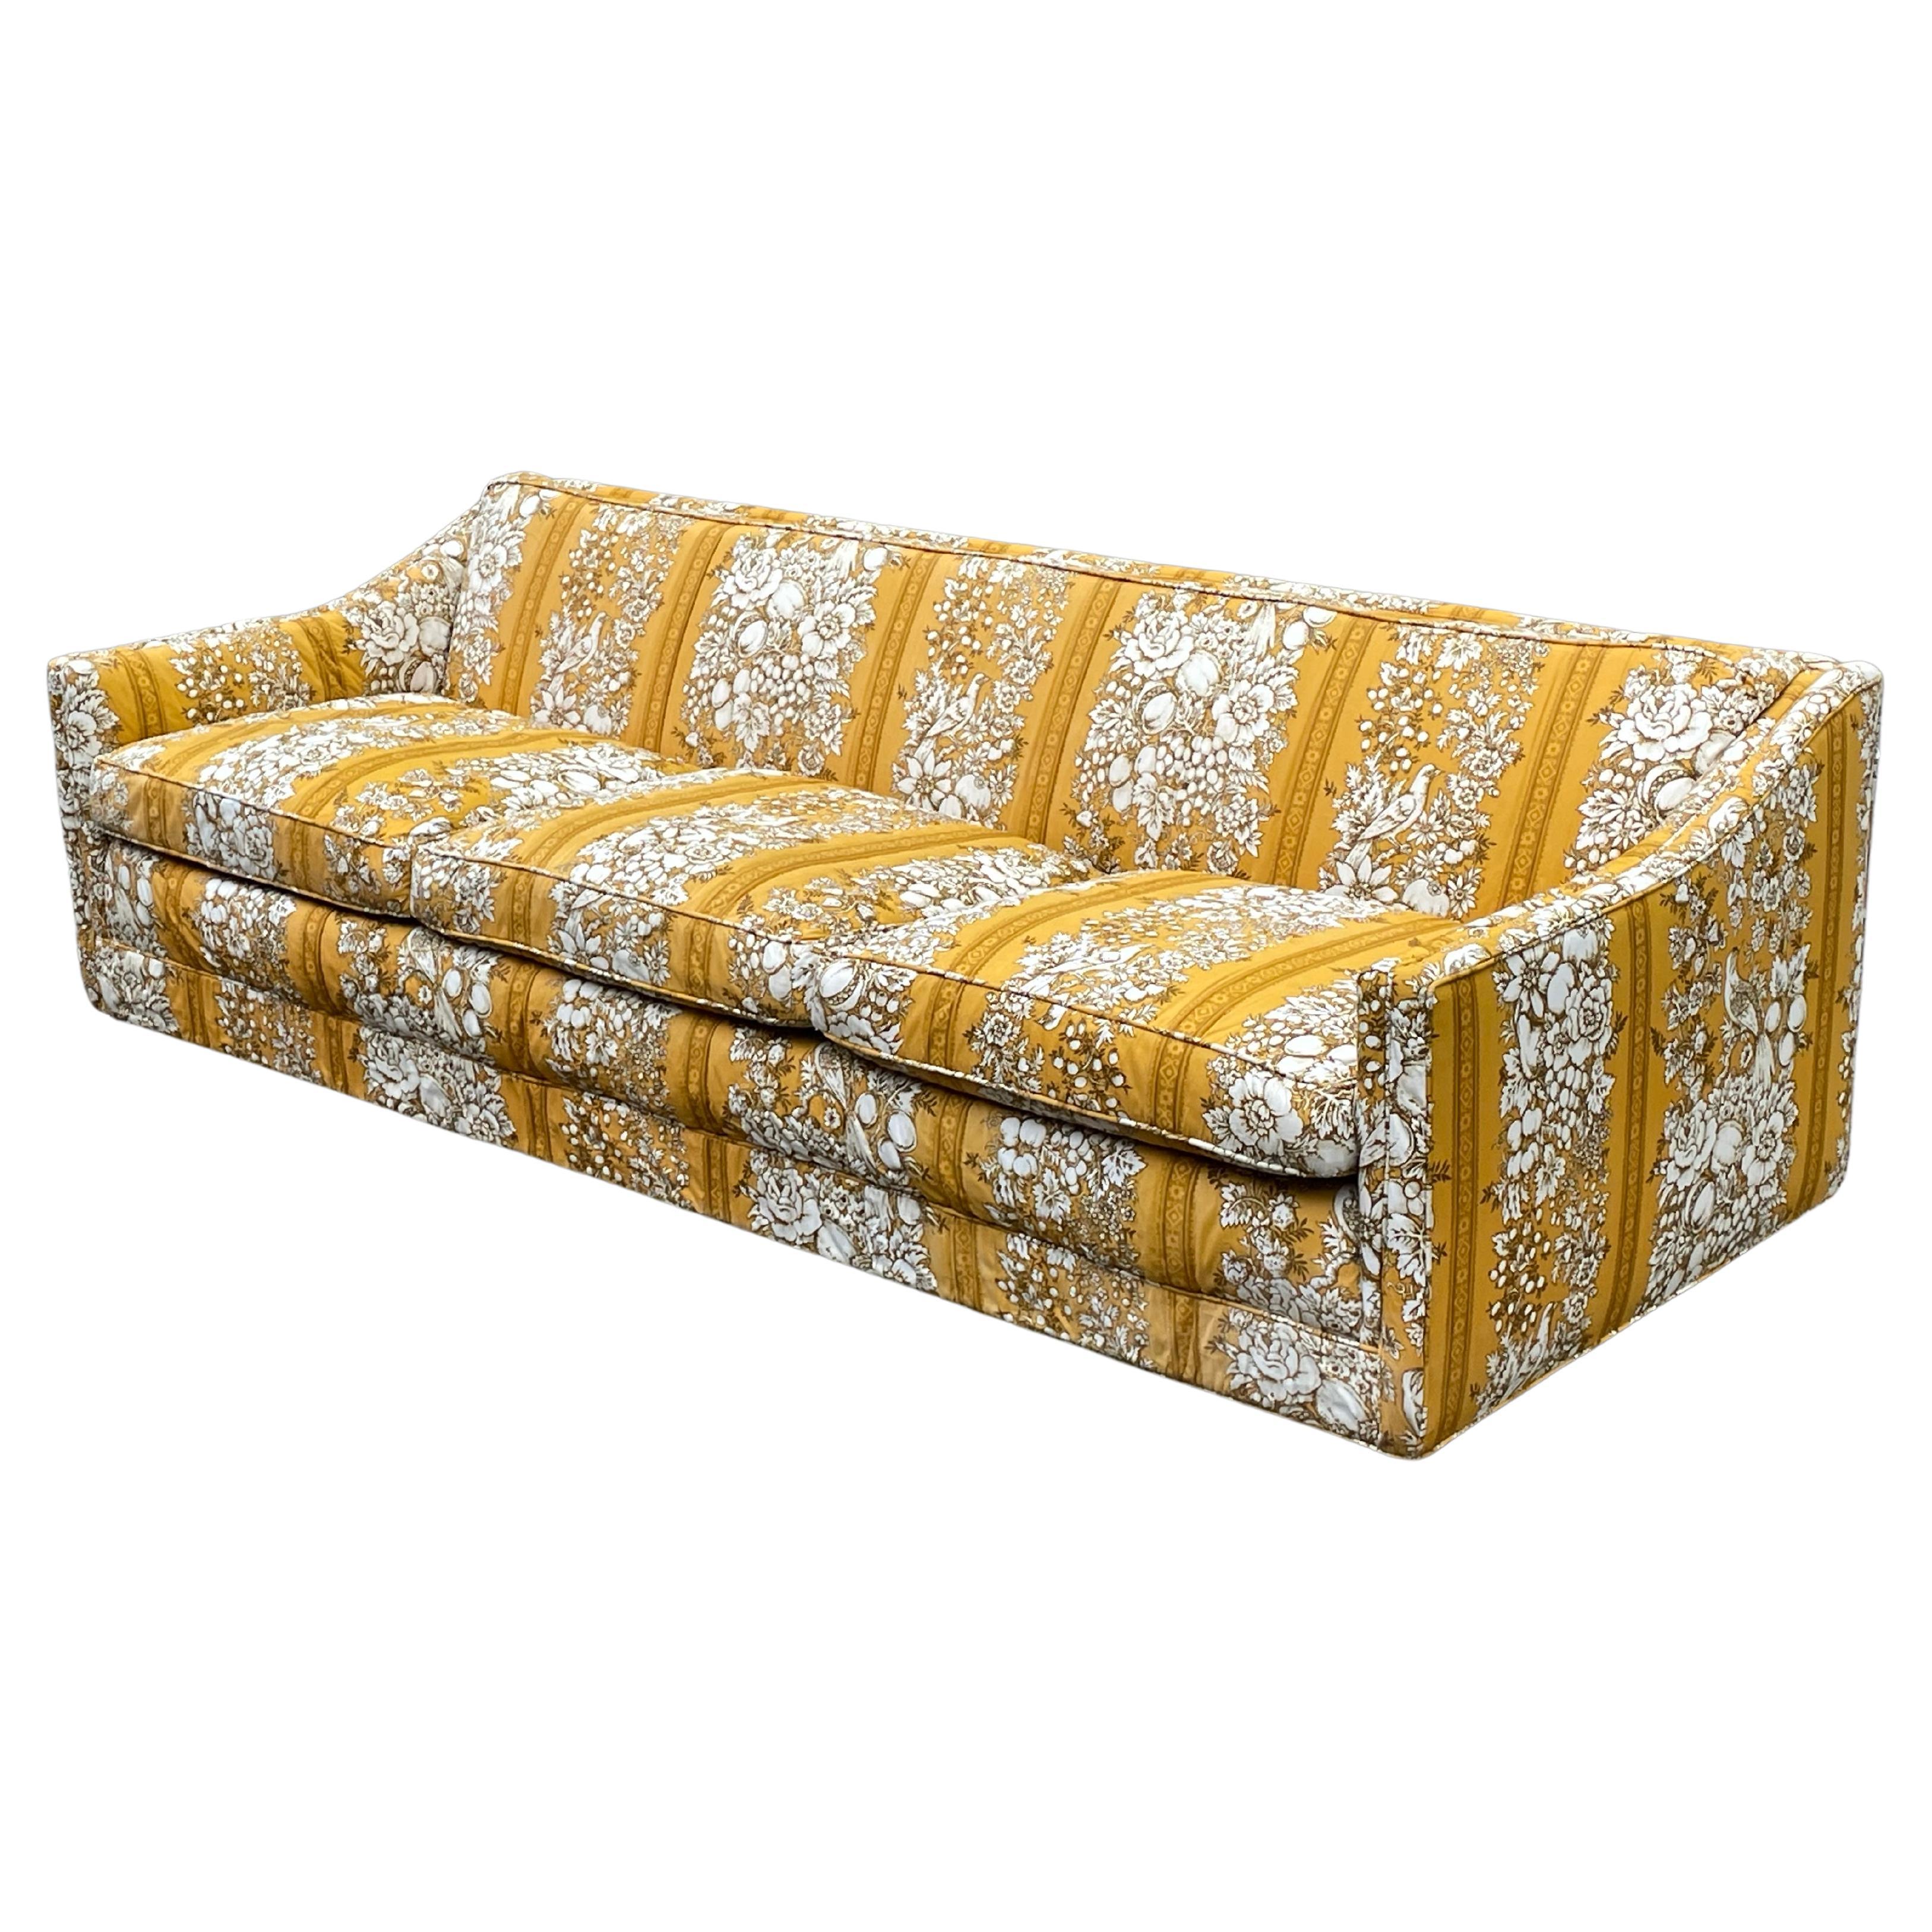 Canapé vintage sculptural des années 60 avec un magnifique tissu jaune d'origine. Il s'agissait d'un canapé fait sur mesure par le grand magasin de luxe Bullocks à Los Angeles.

Il provient d'une propriété située dans le quartier de Brentwood à Los